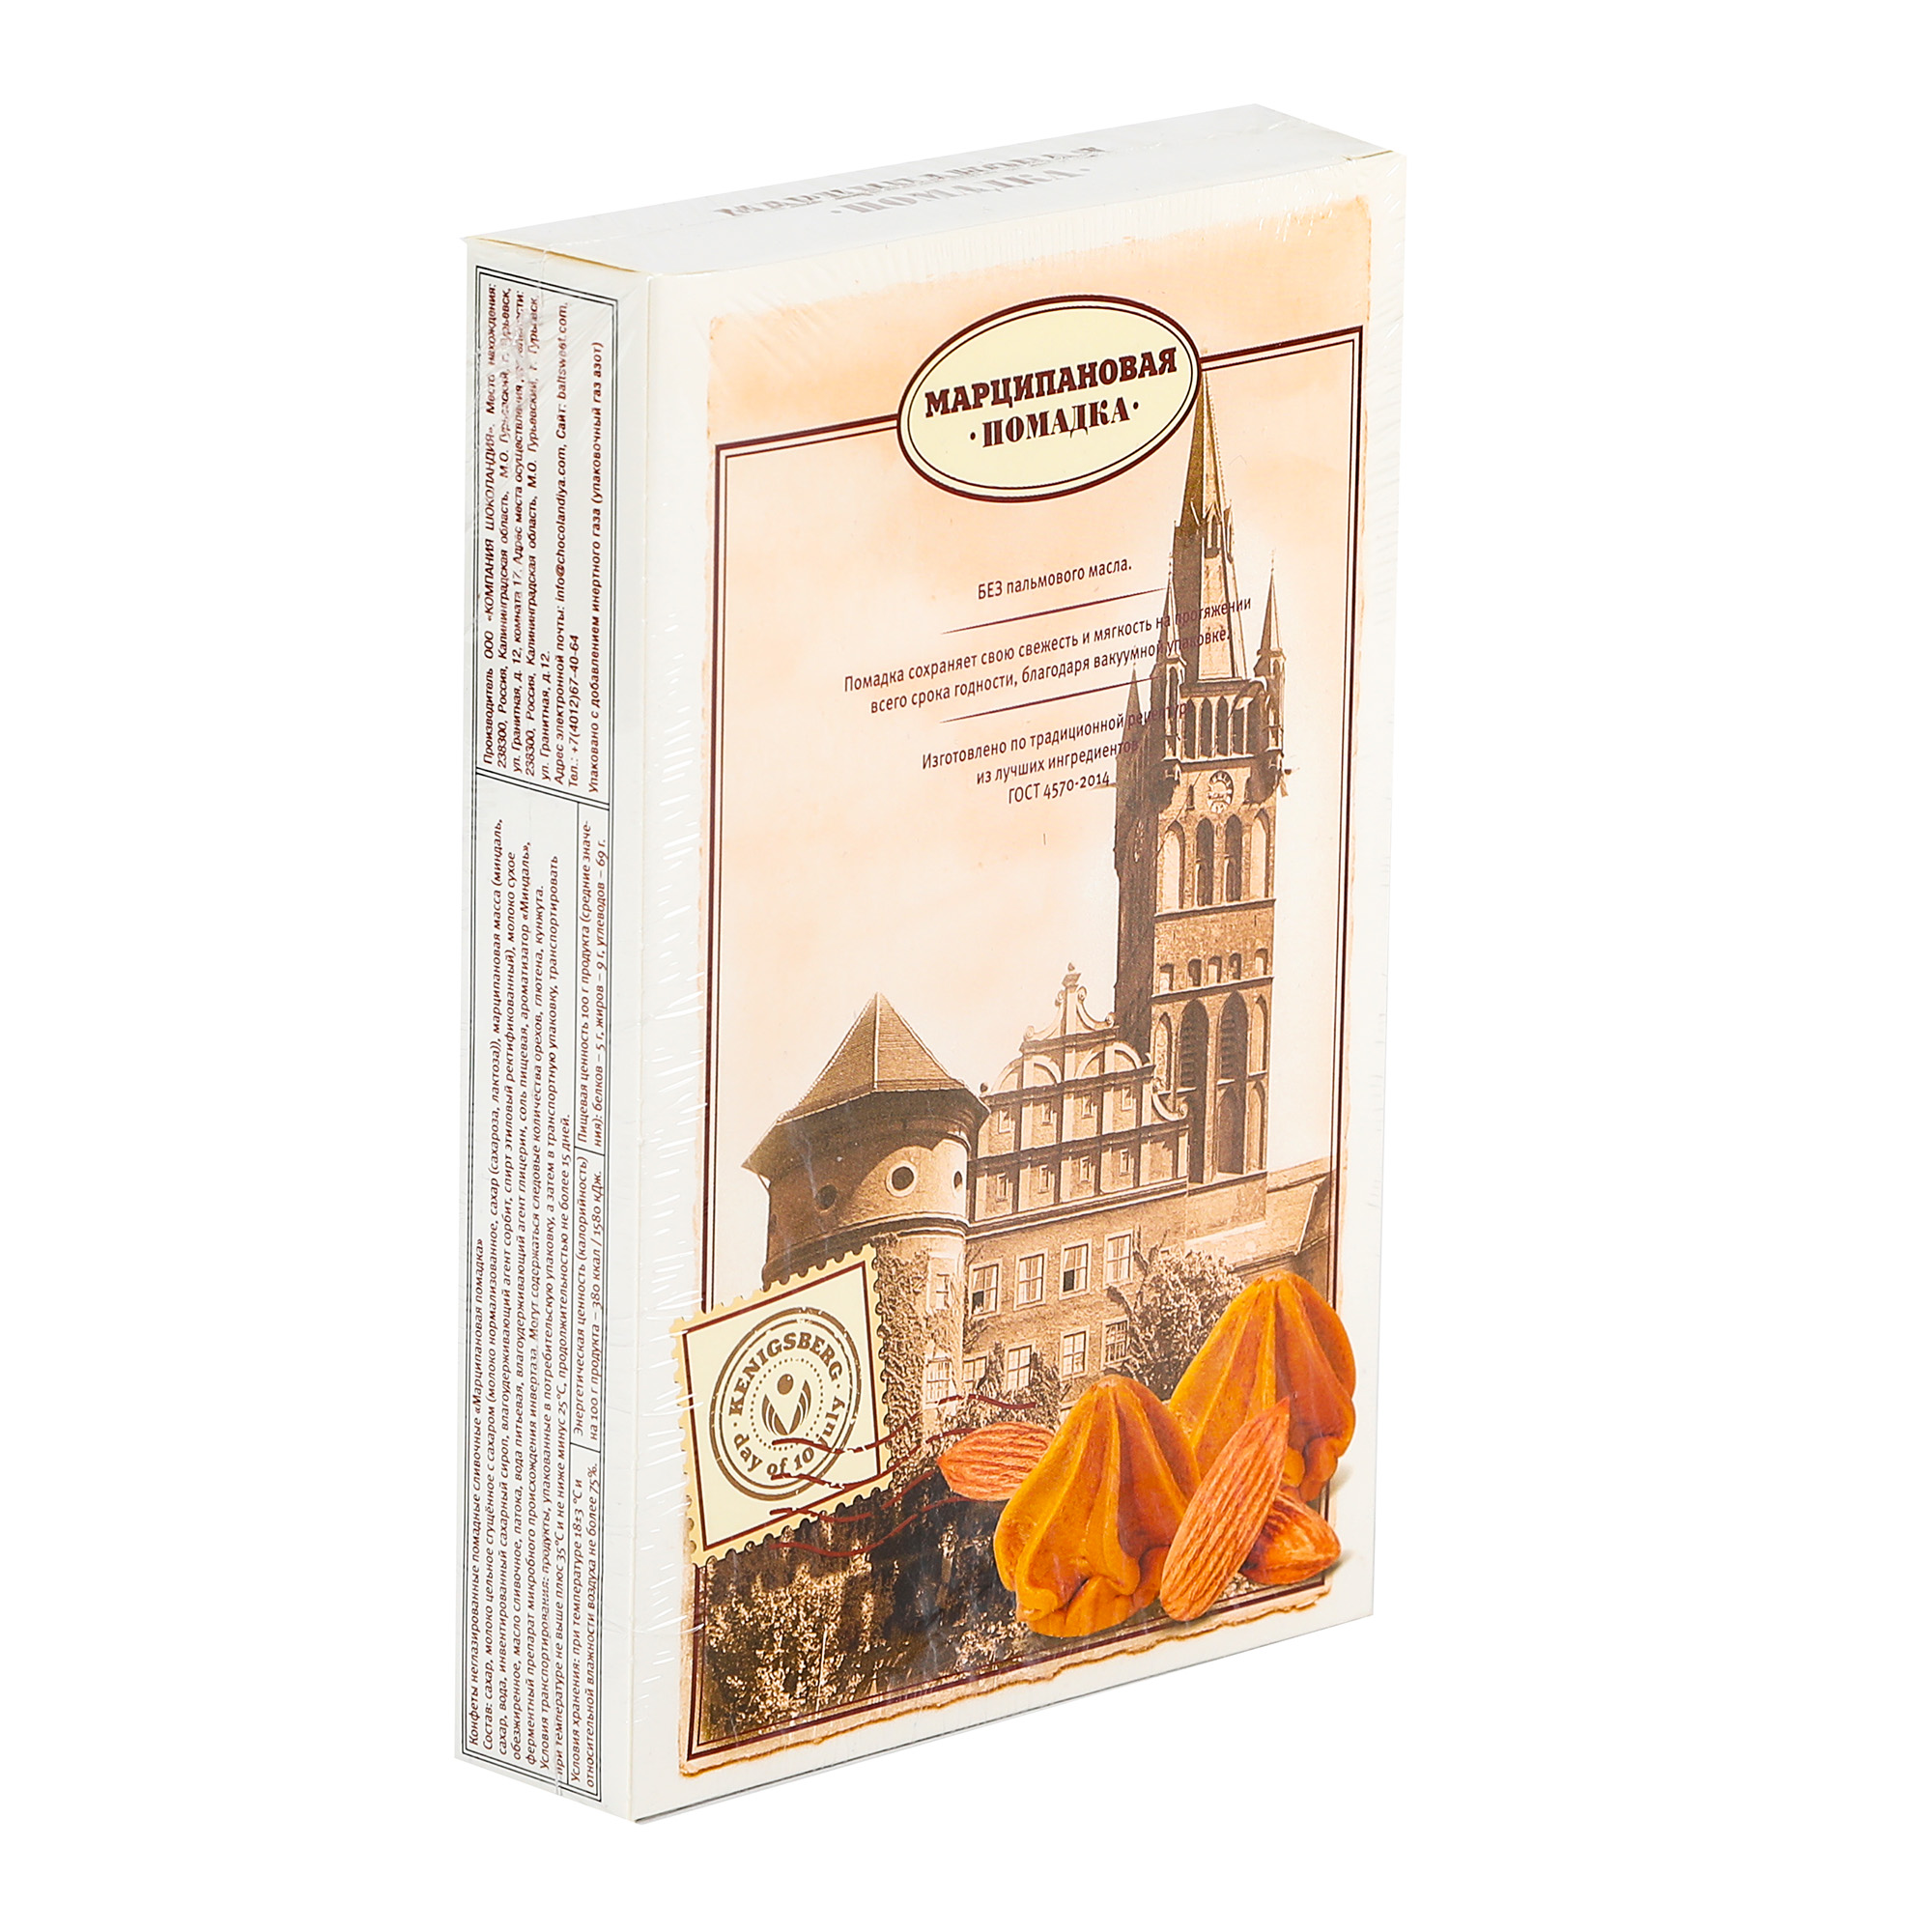 Конфеты Компания Шоколандия помадка Kenigsberg, 150 г конфеты raffaello сердце 300 гр